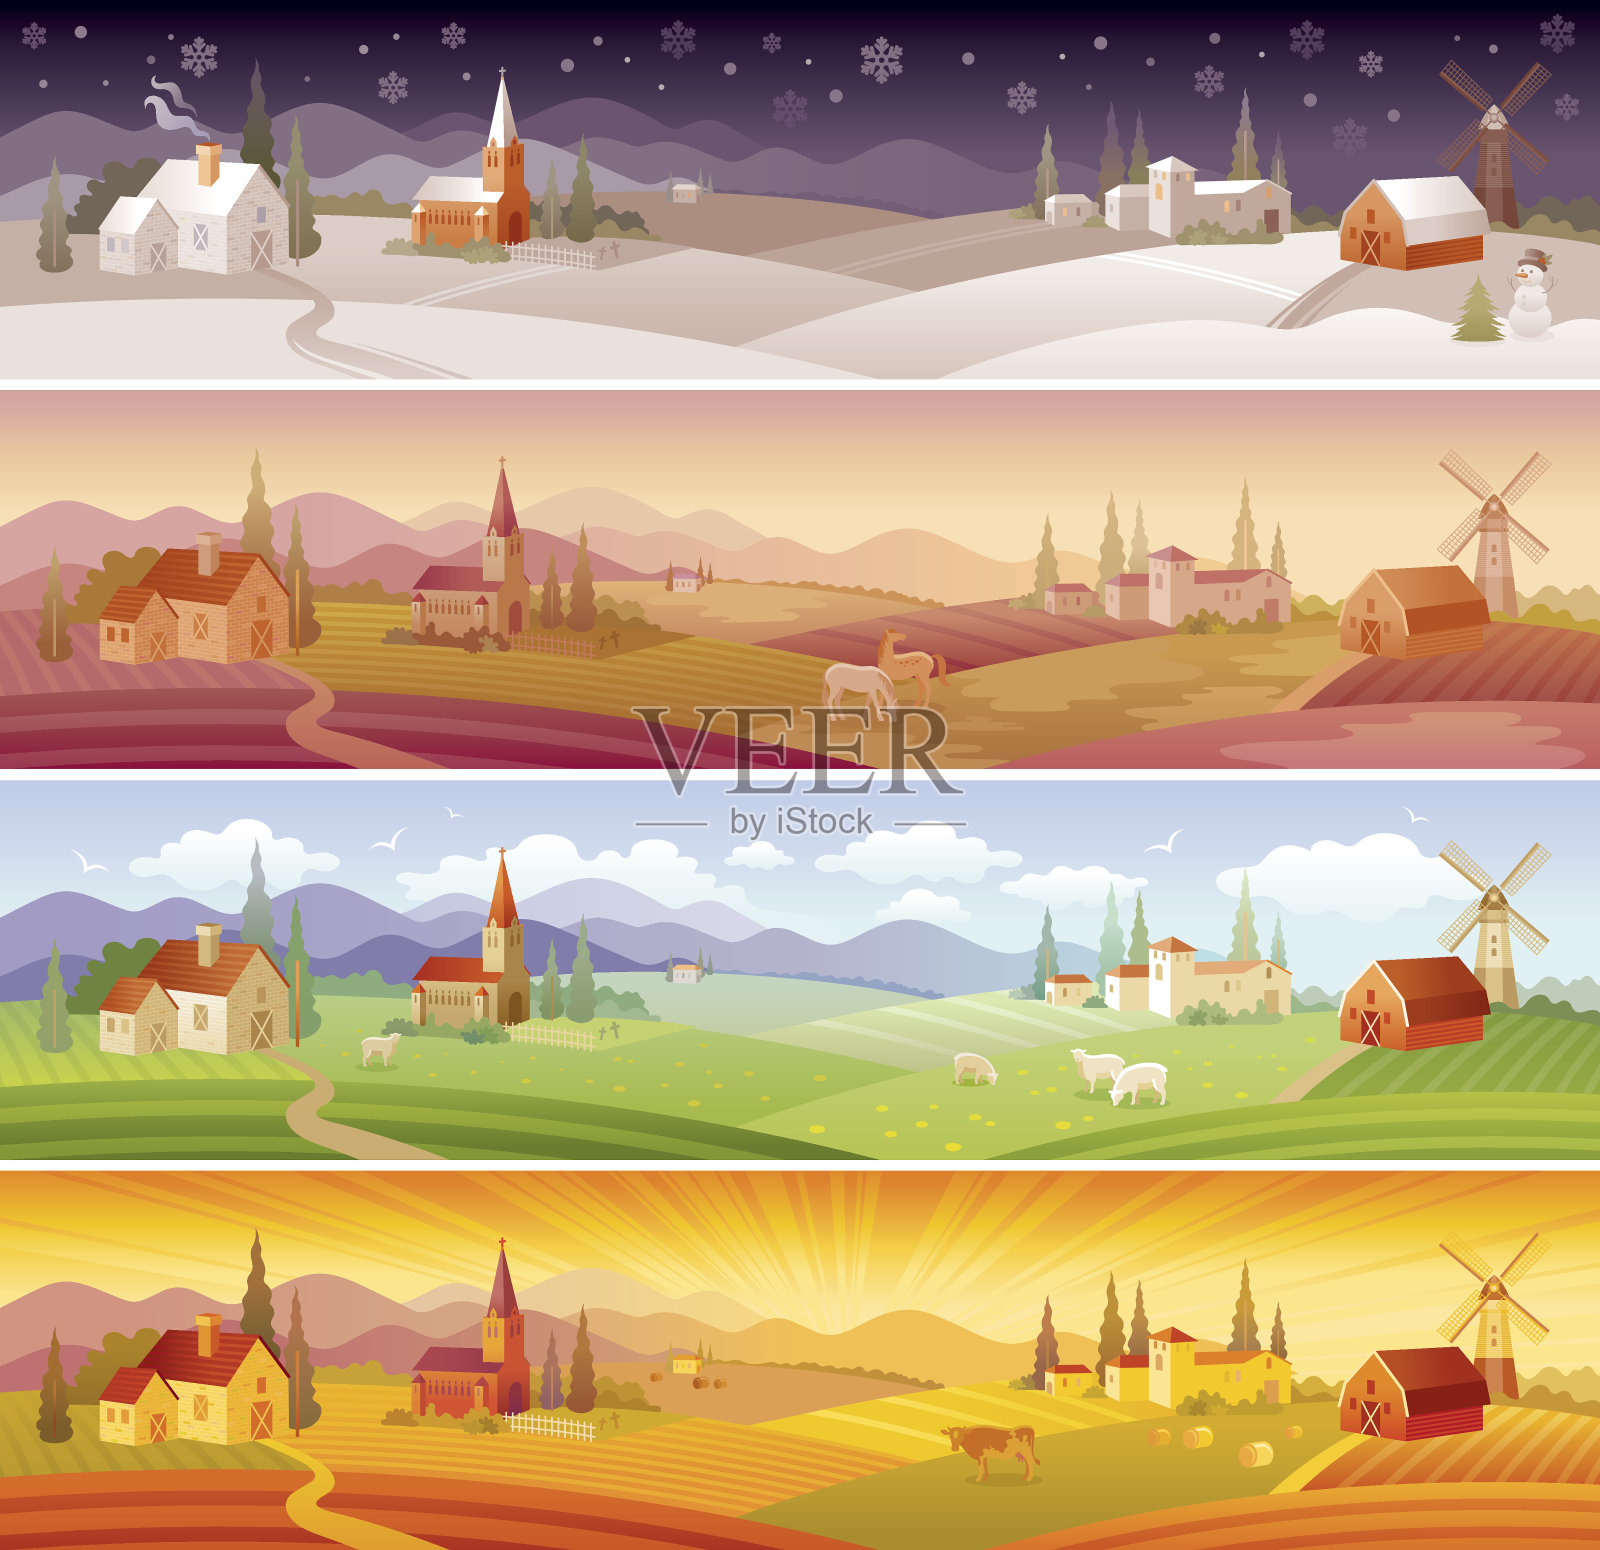 四季景观:冬、春、夏、秋插画图片素材